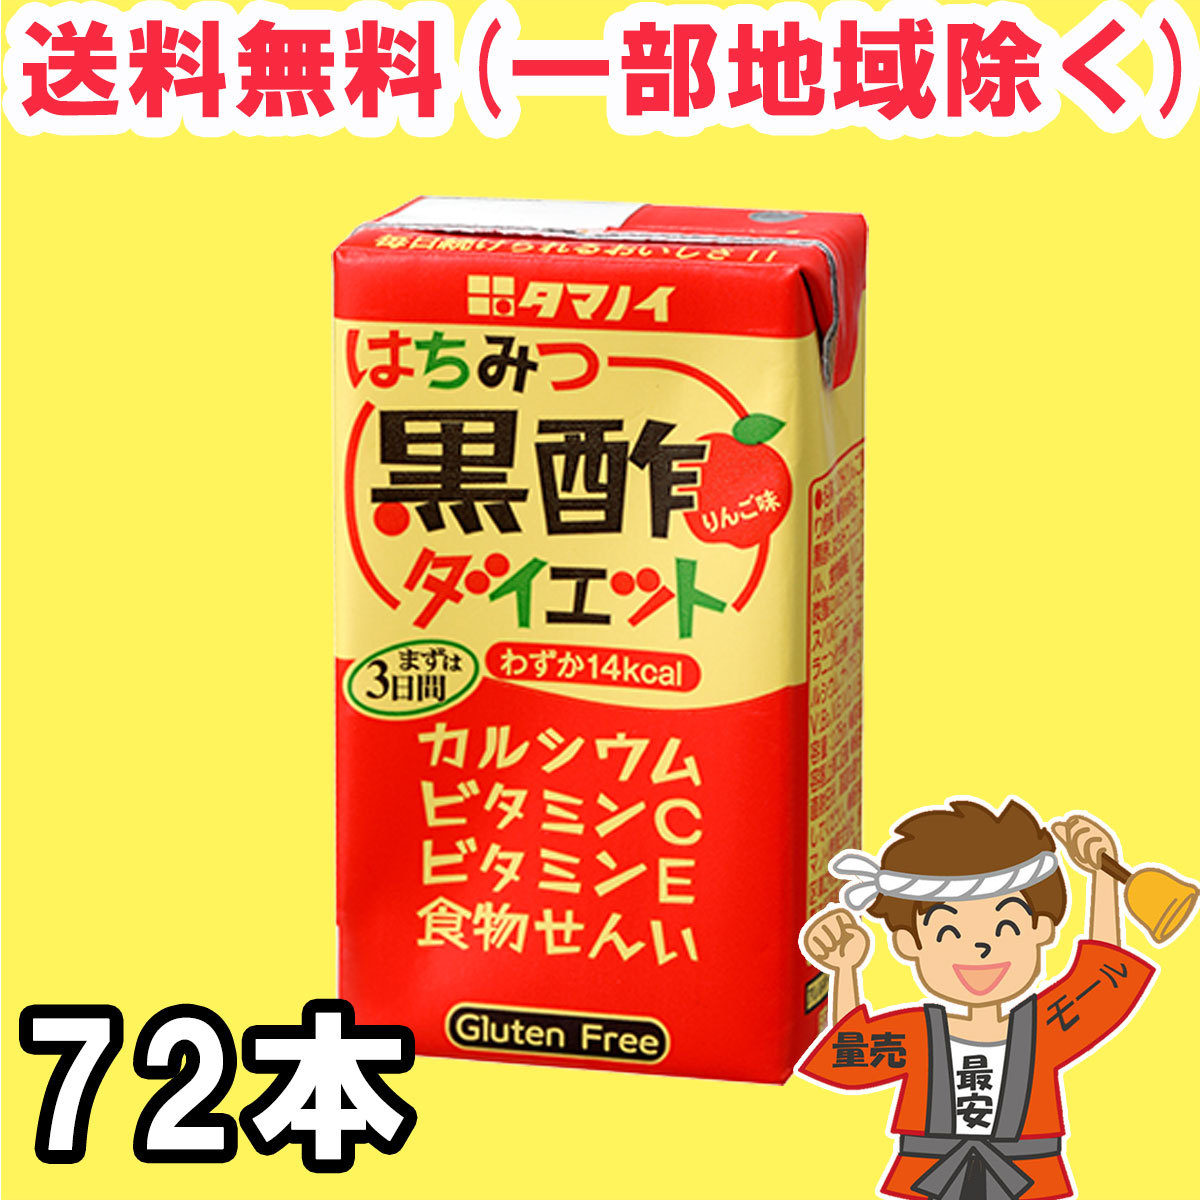  сейчас только отметка 2 раз *tamanoi уксус мед чёрный уксус диета 125ml бумага упаковка ×24шт.@×3 кейс чёрный уксус напиток распорка tamanoi бесплатная доставка ( Hokkaido * Tohoku * Okinawa за исключением )